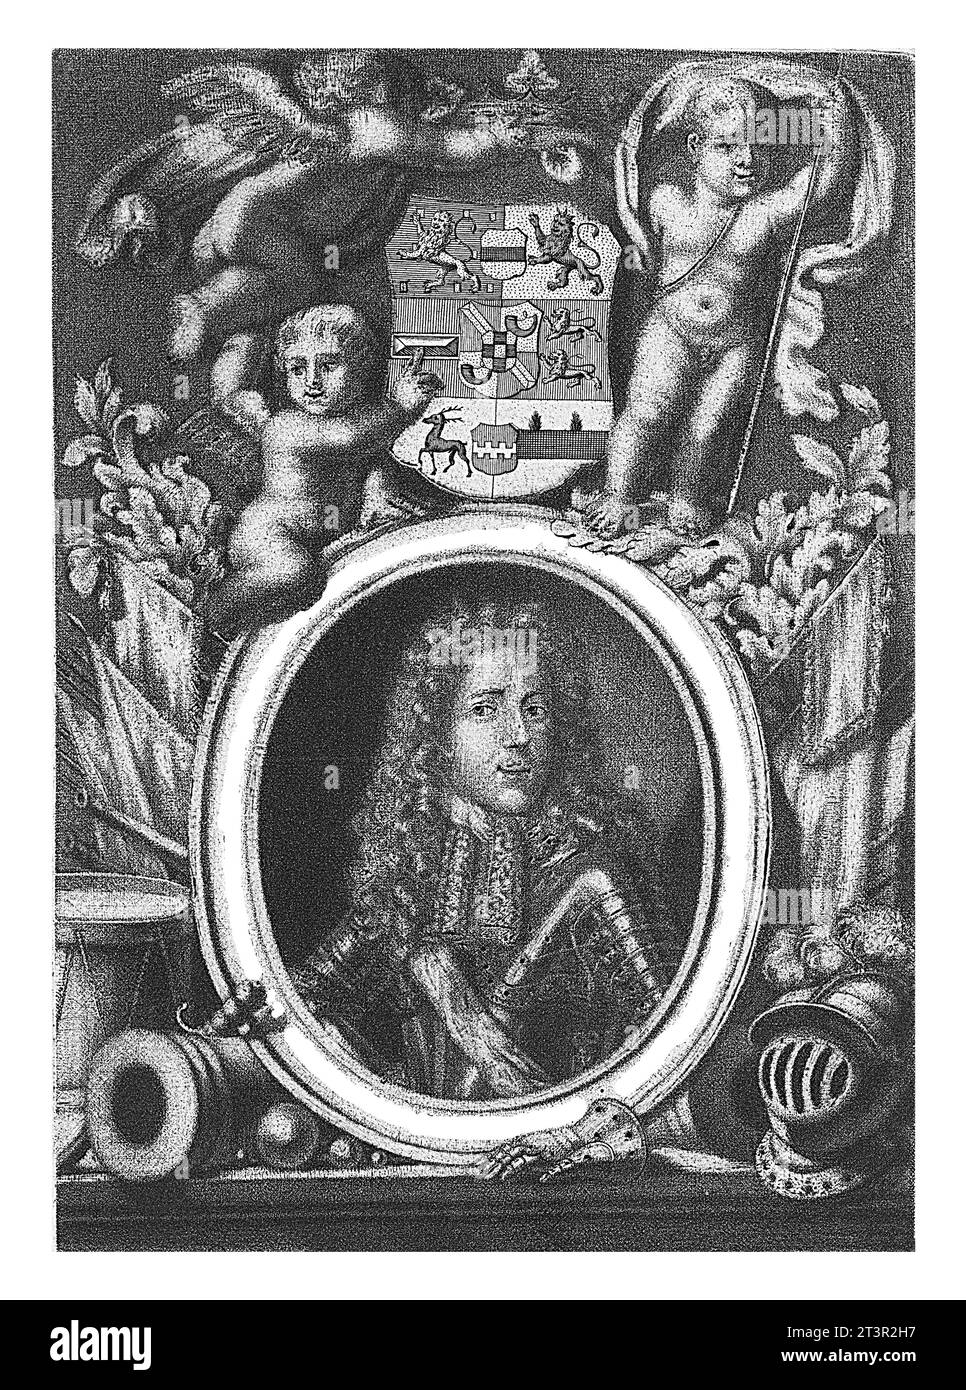 Porträt von Johan Willem Friso, Prinz von Orange-Nassau, Jacob Folkema, um 1712 - 1767 Porträt von Johan Willem Friso in einem Oval mit Randinschrift Stockfoto